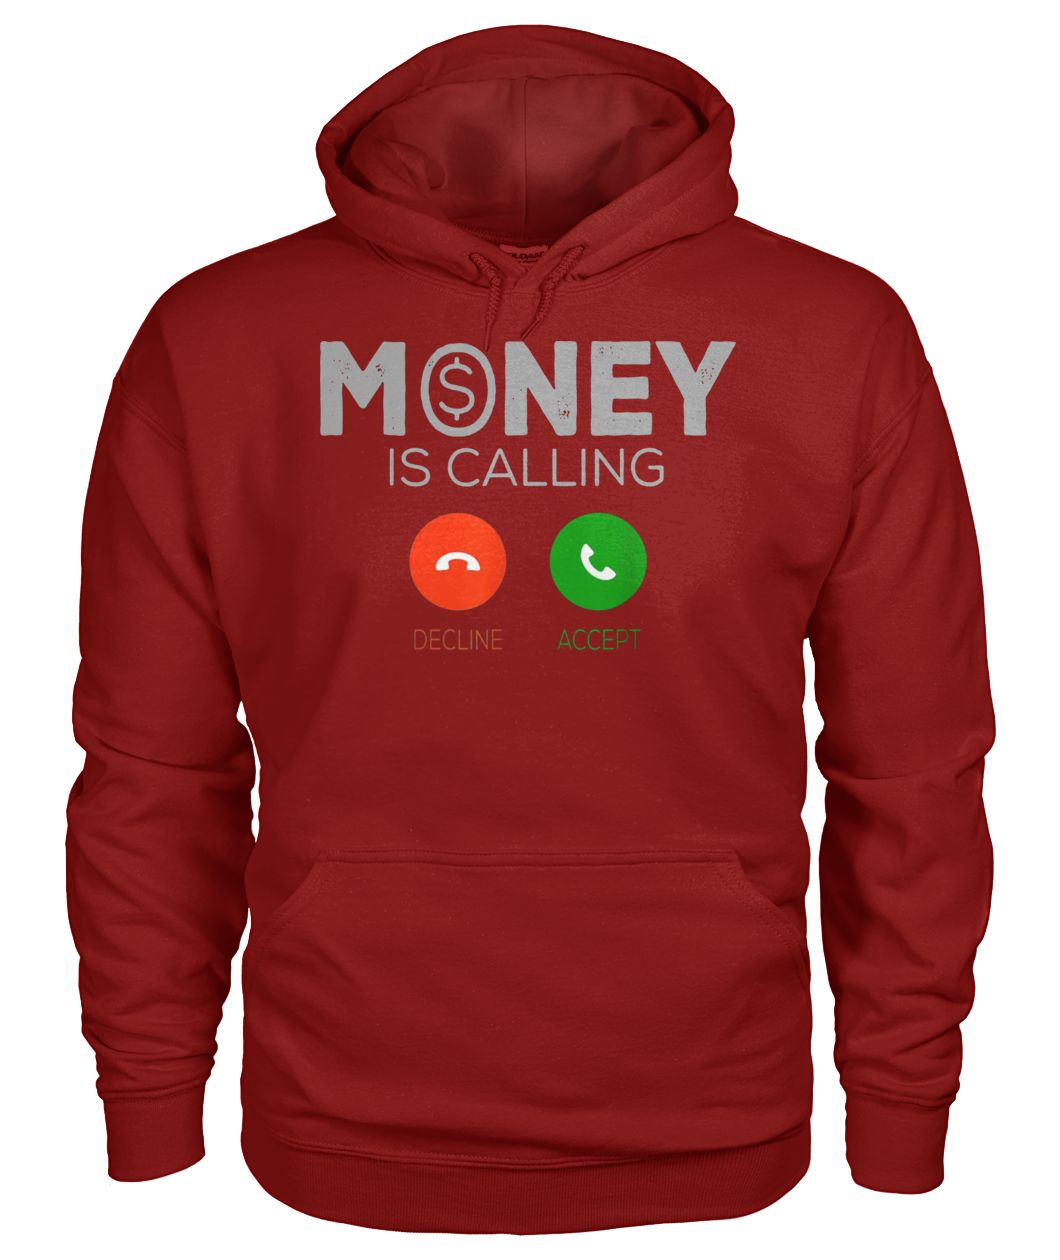 Money is calling decline or accept gildan hoodie